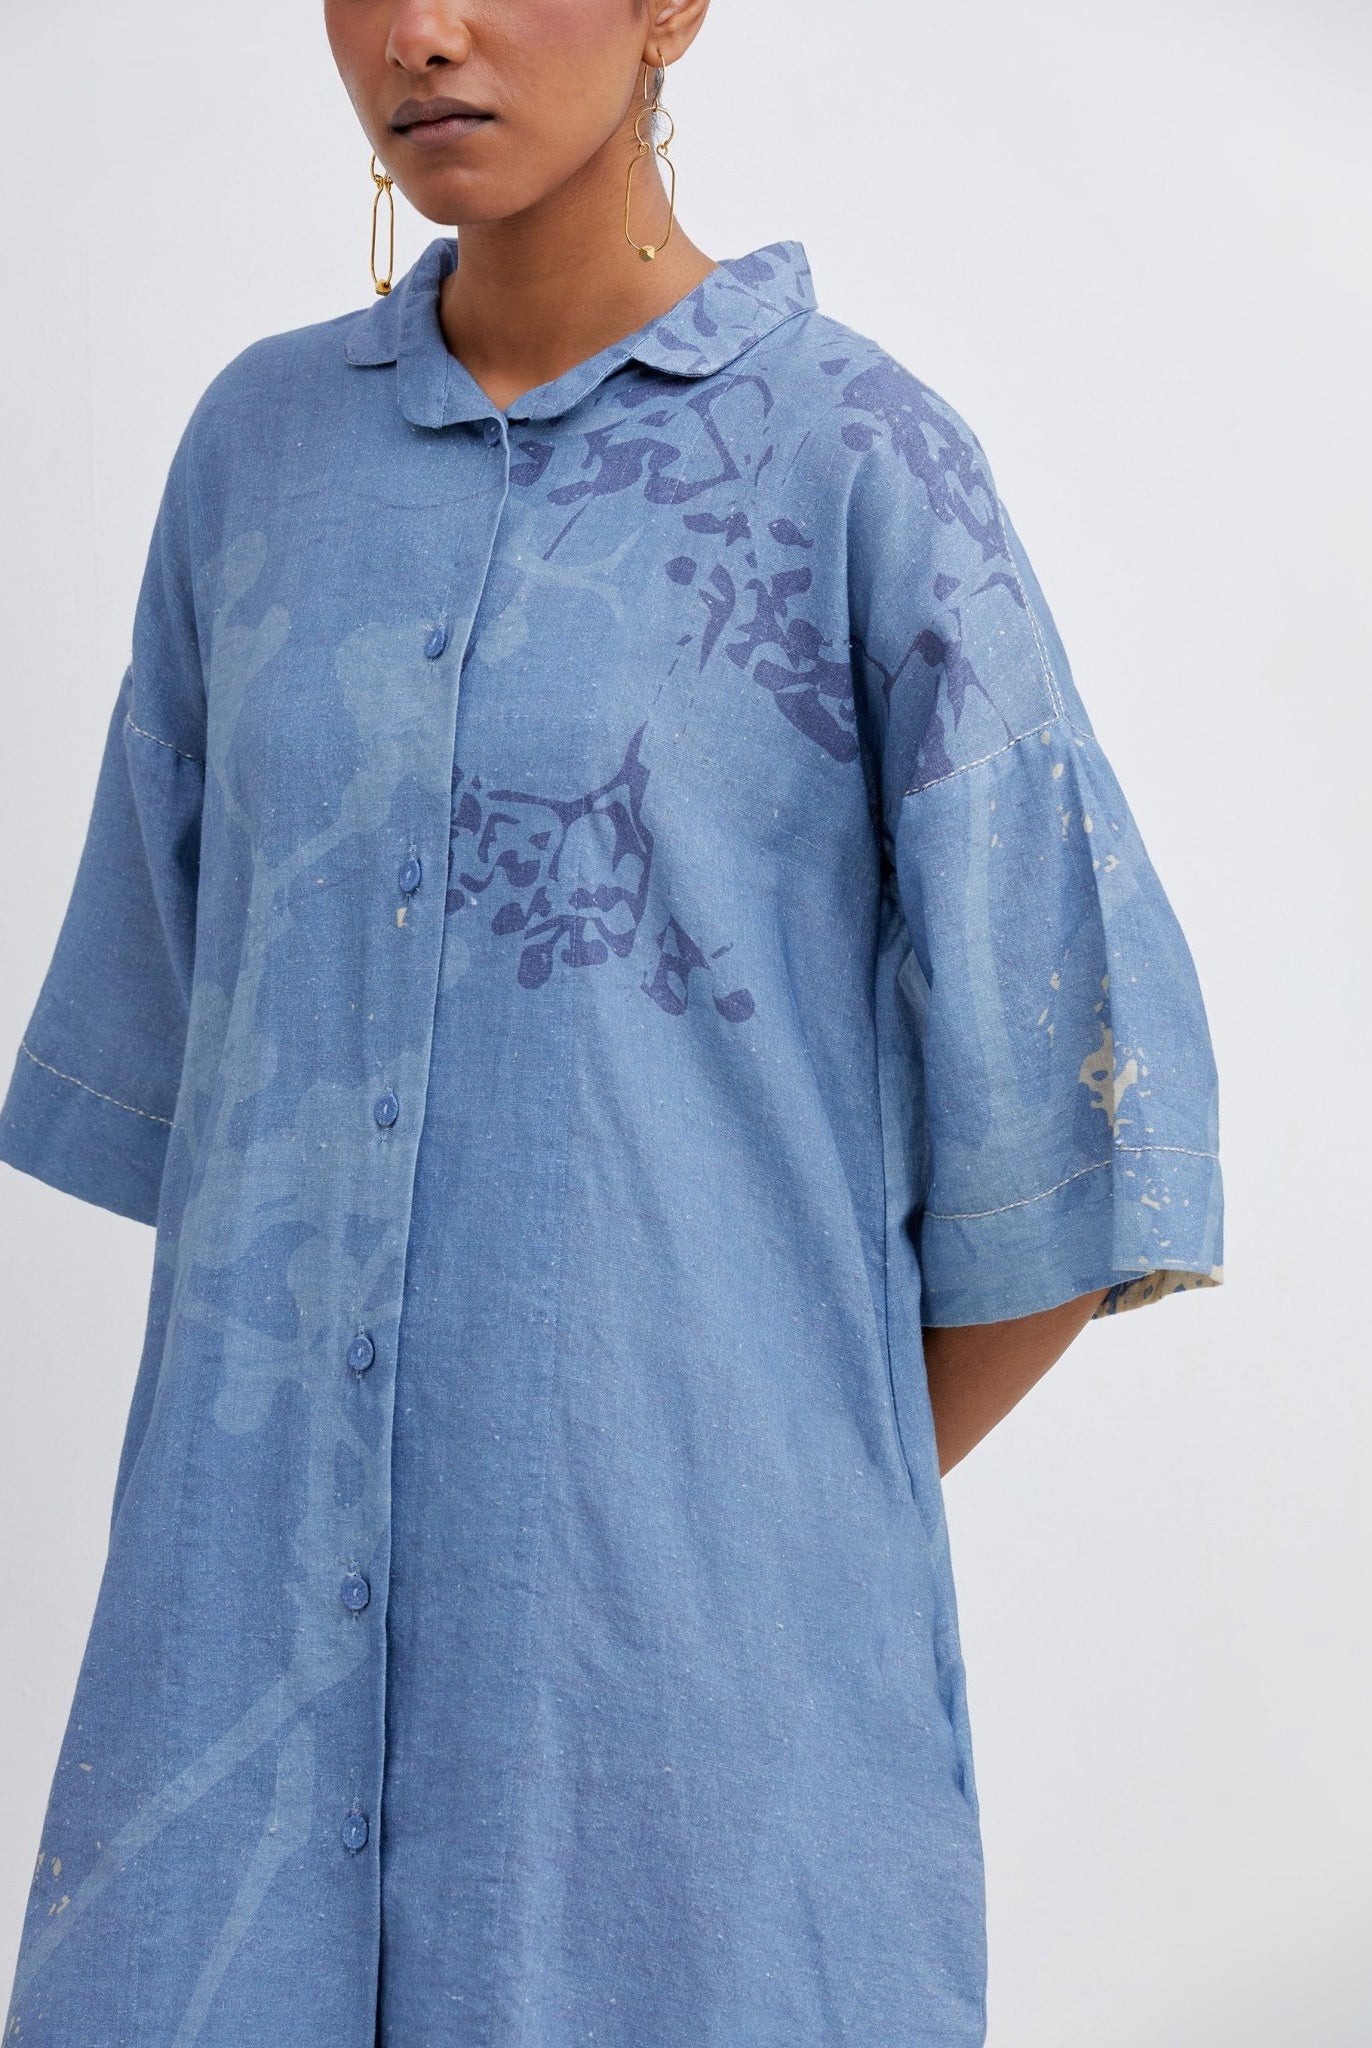 Foliage Blue Shirt Dress - CiceroniBhavik Shah